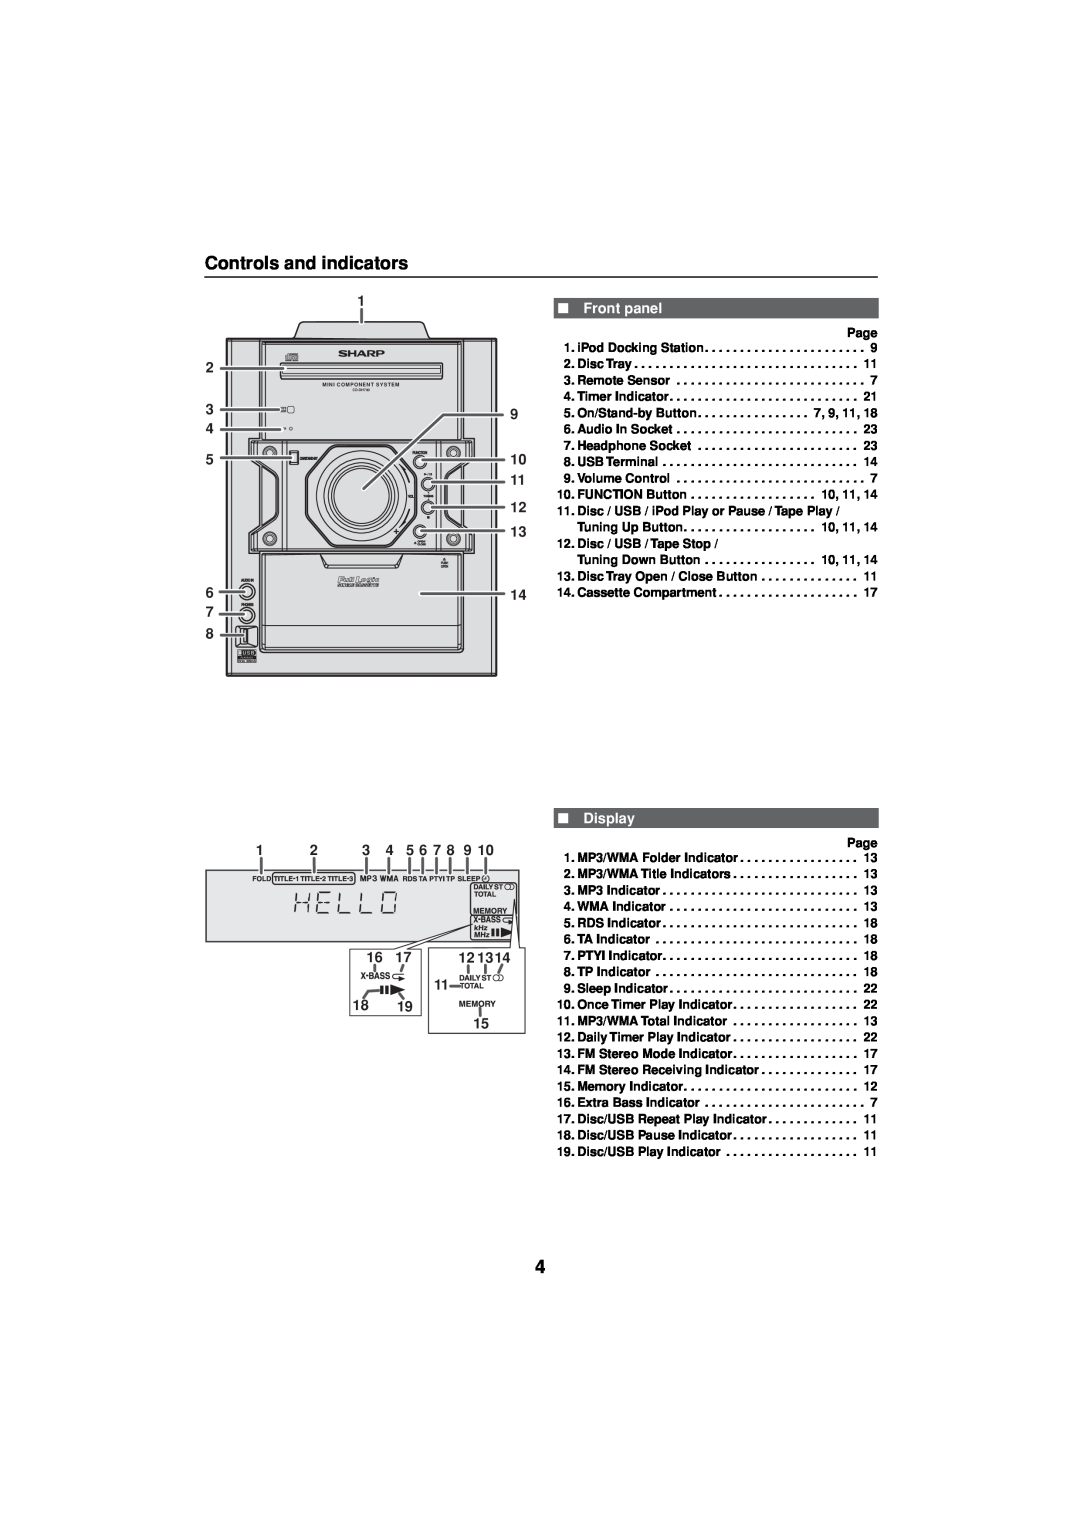 Sharp CD-DH790NH operation manual Controls and indicators, Front panel, Display 